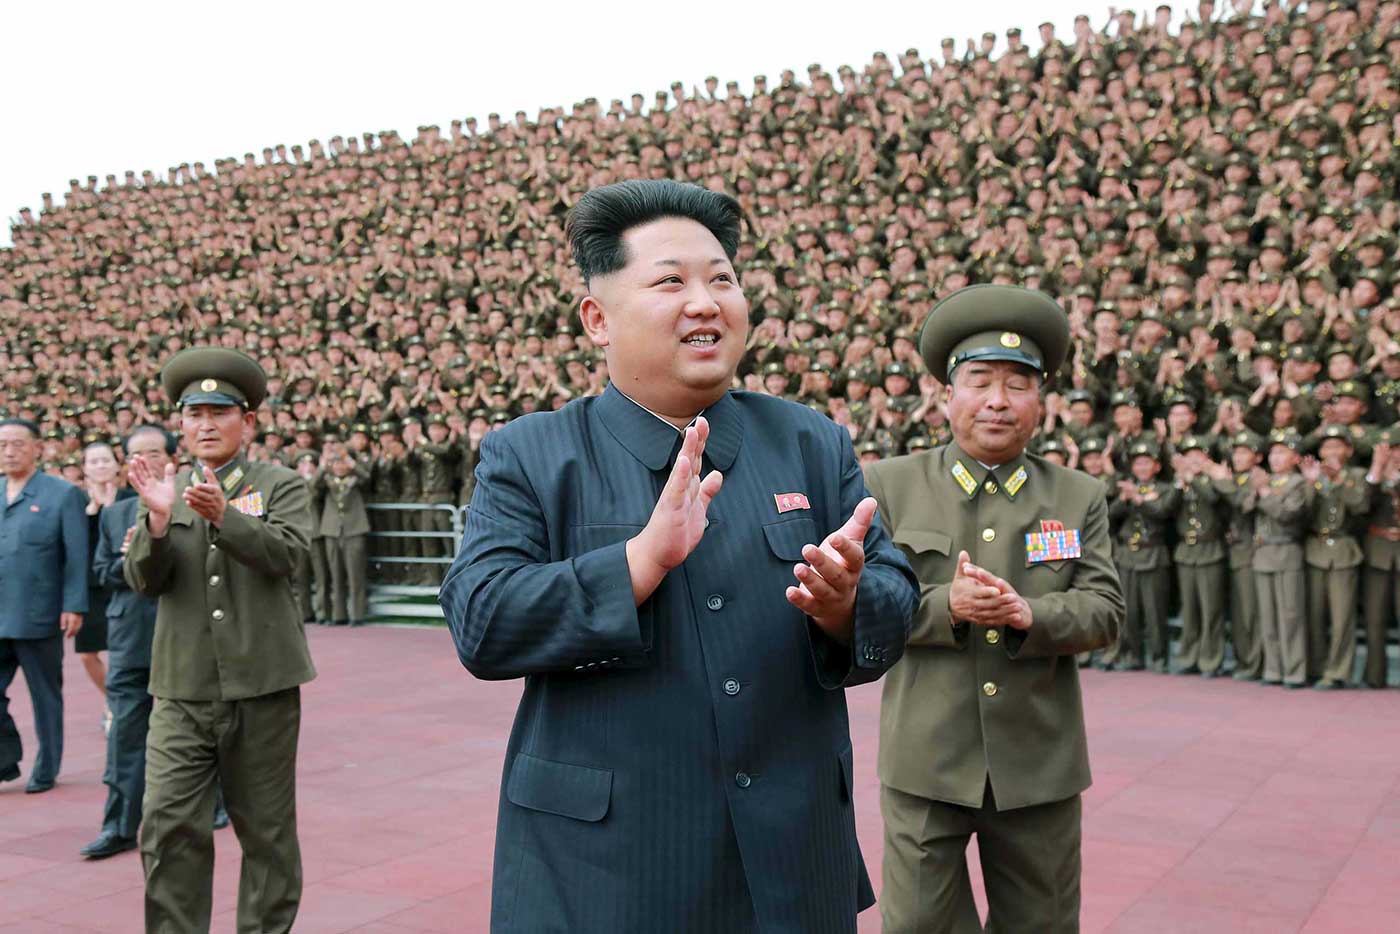 سر حقن الذهب التي ترافق كيم زعيم كوريا الشمالية